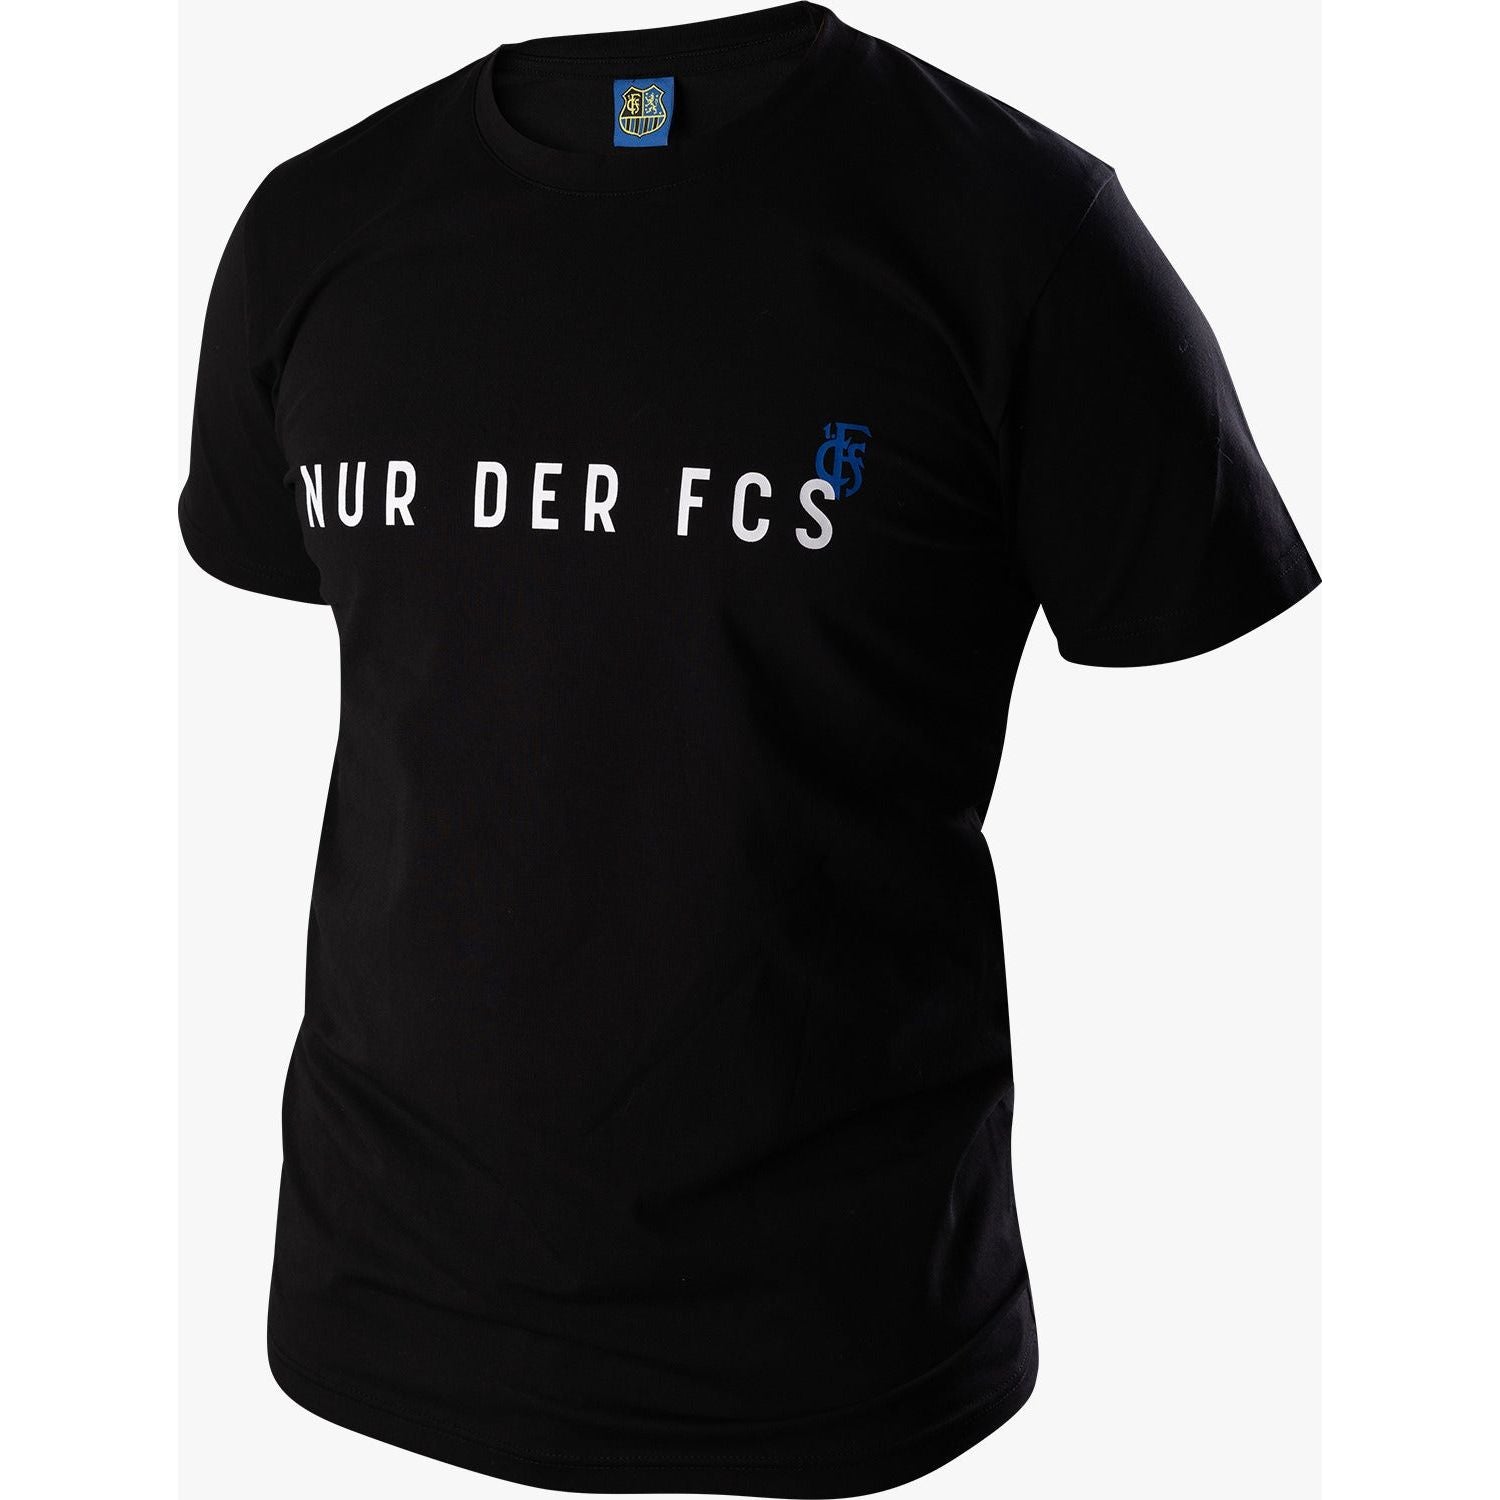 FCS T-Shirt "NUR DER FCS"